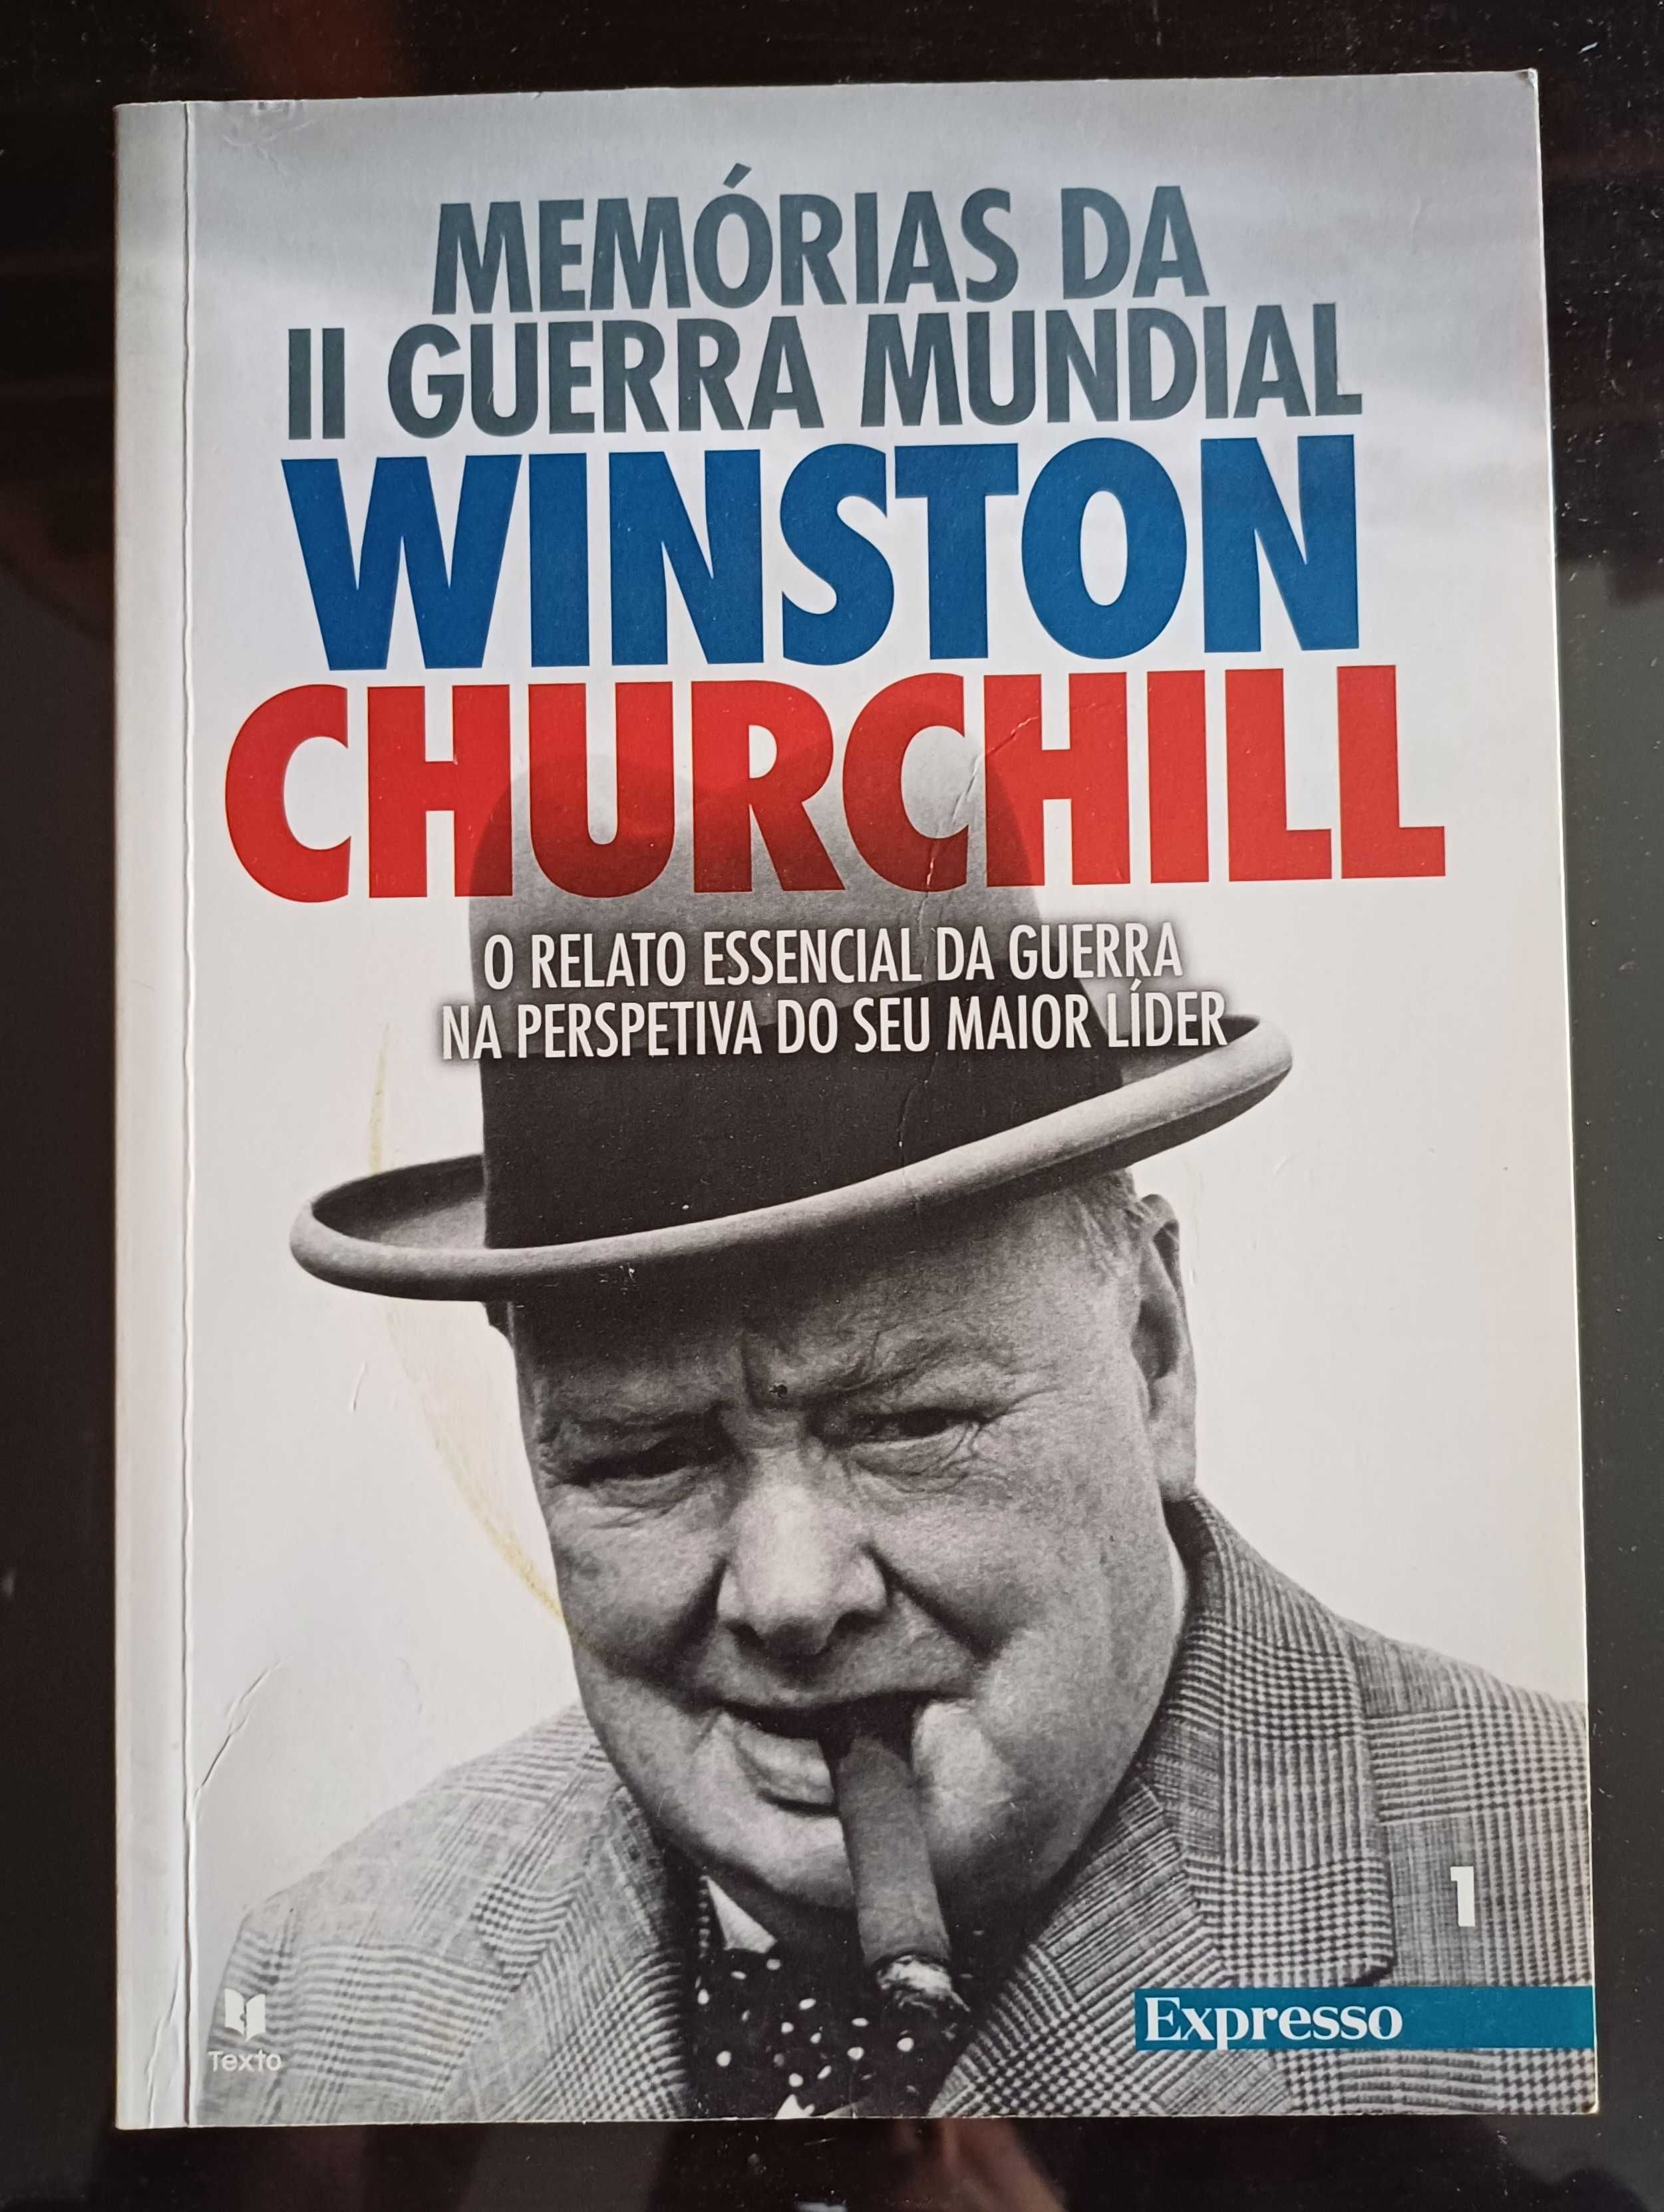 Winston Churchill - Memórias da 2ª Guerra Mundial (Vol. I, Livro 1)